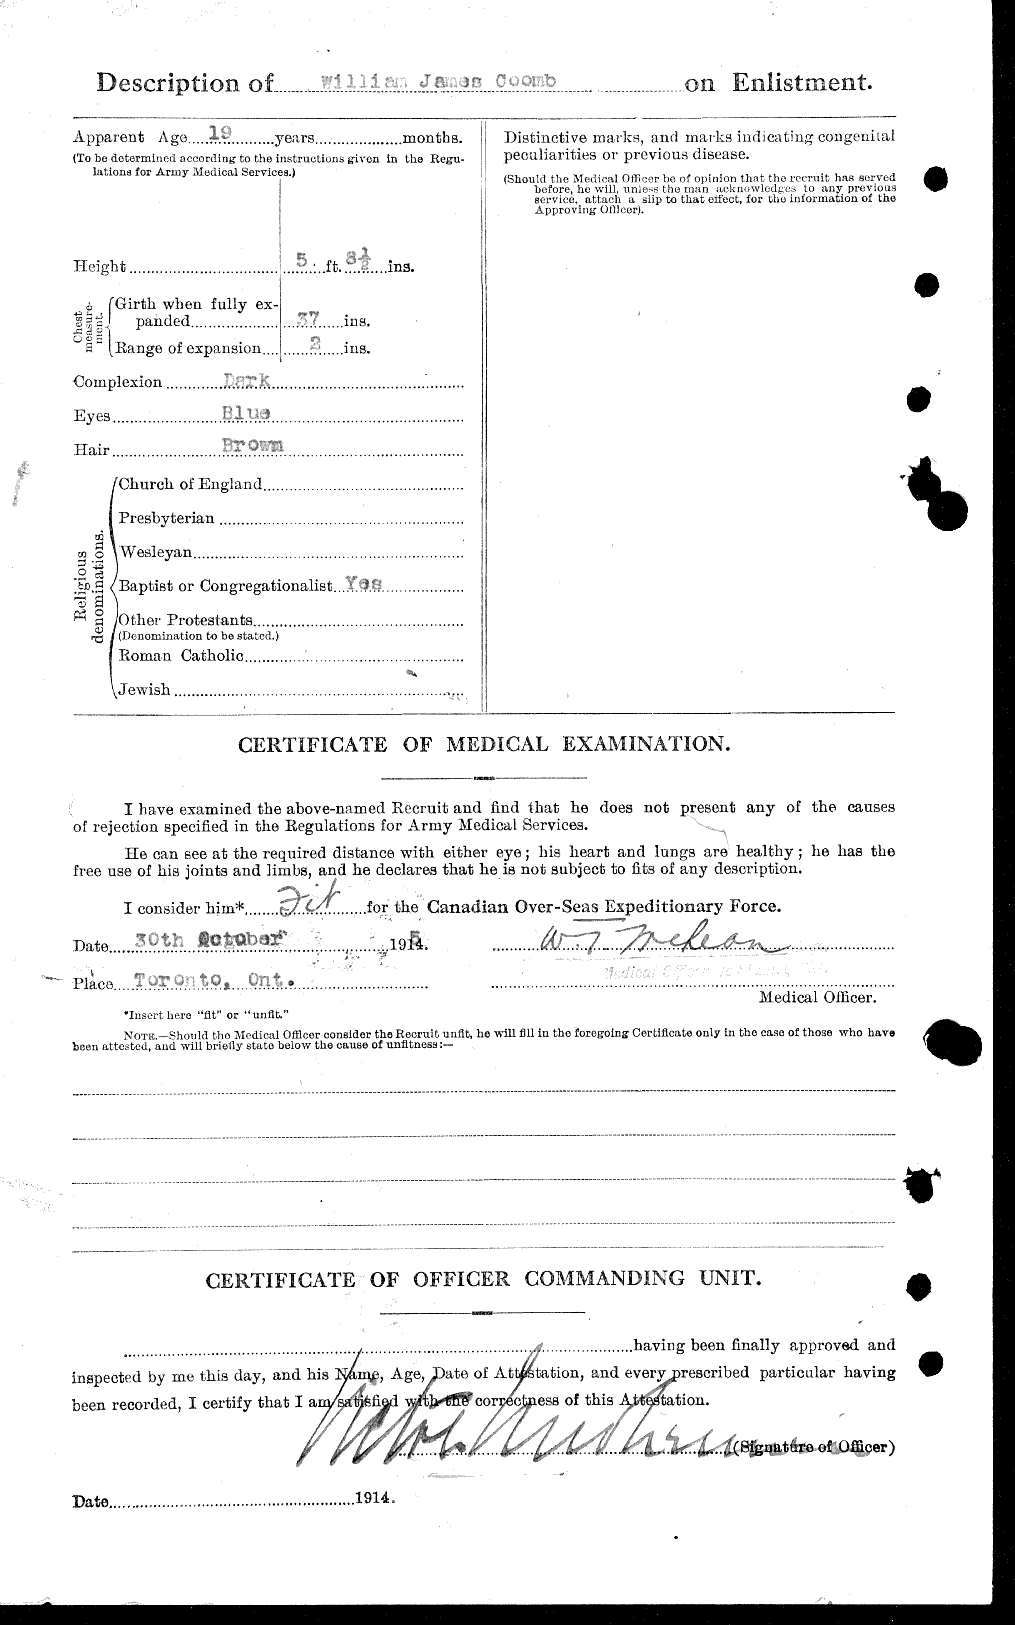 Dossiers du Personnel de la Première Guerre mondiale - CEC 036491b